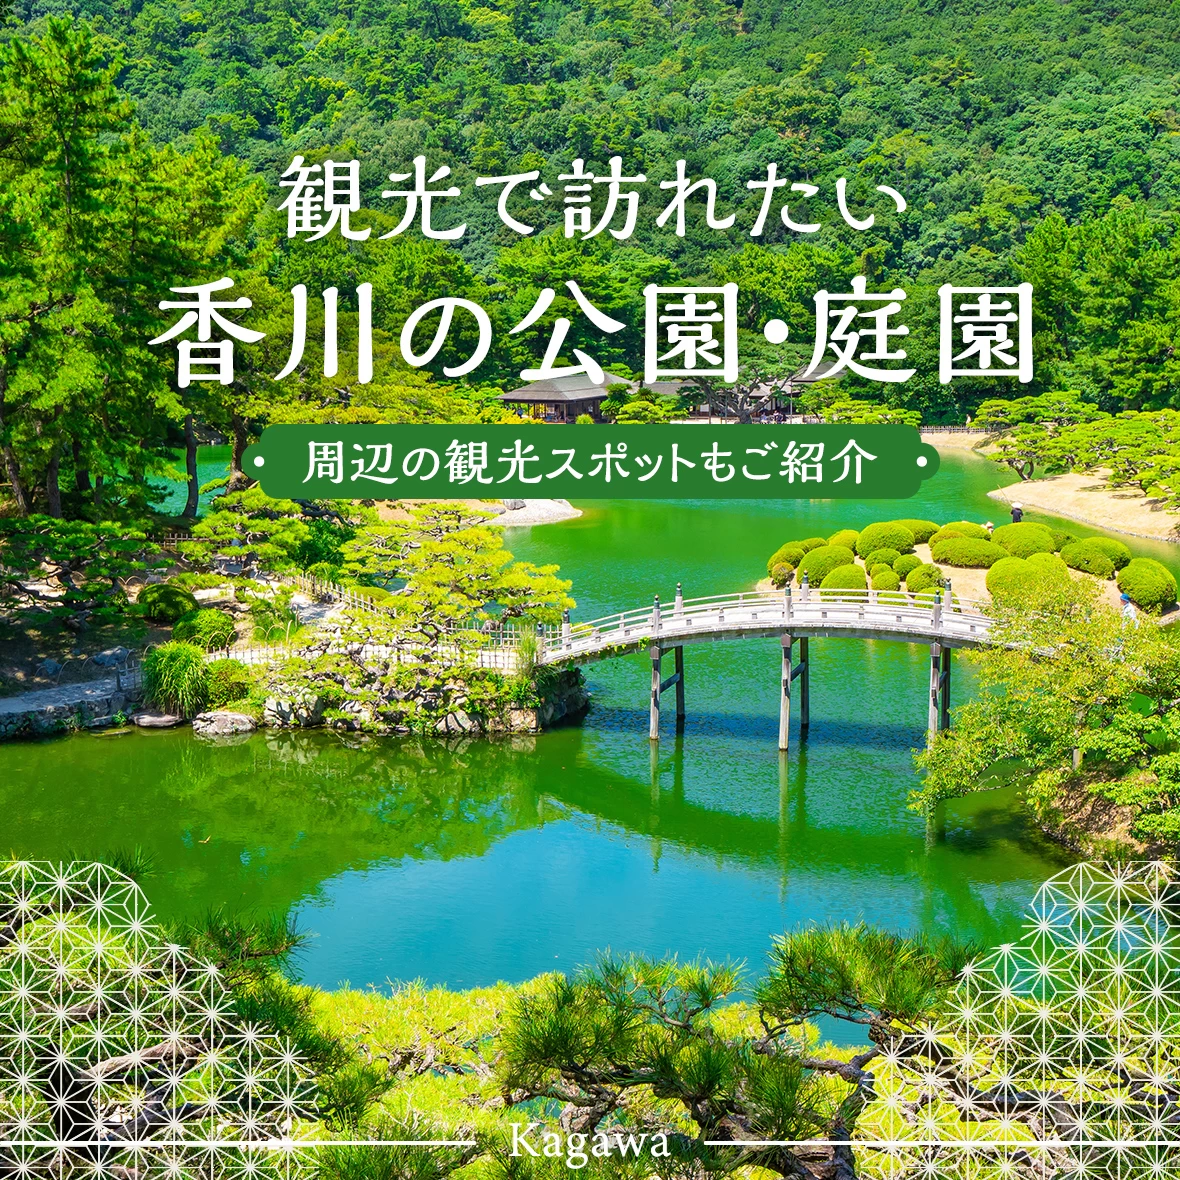 【四国旅行】観光で訪れたい香川の公園・庭園16選 周辺の観光スポットもご紹介